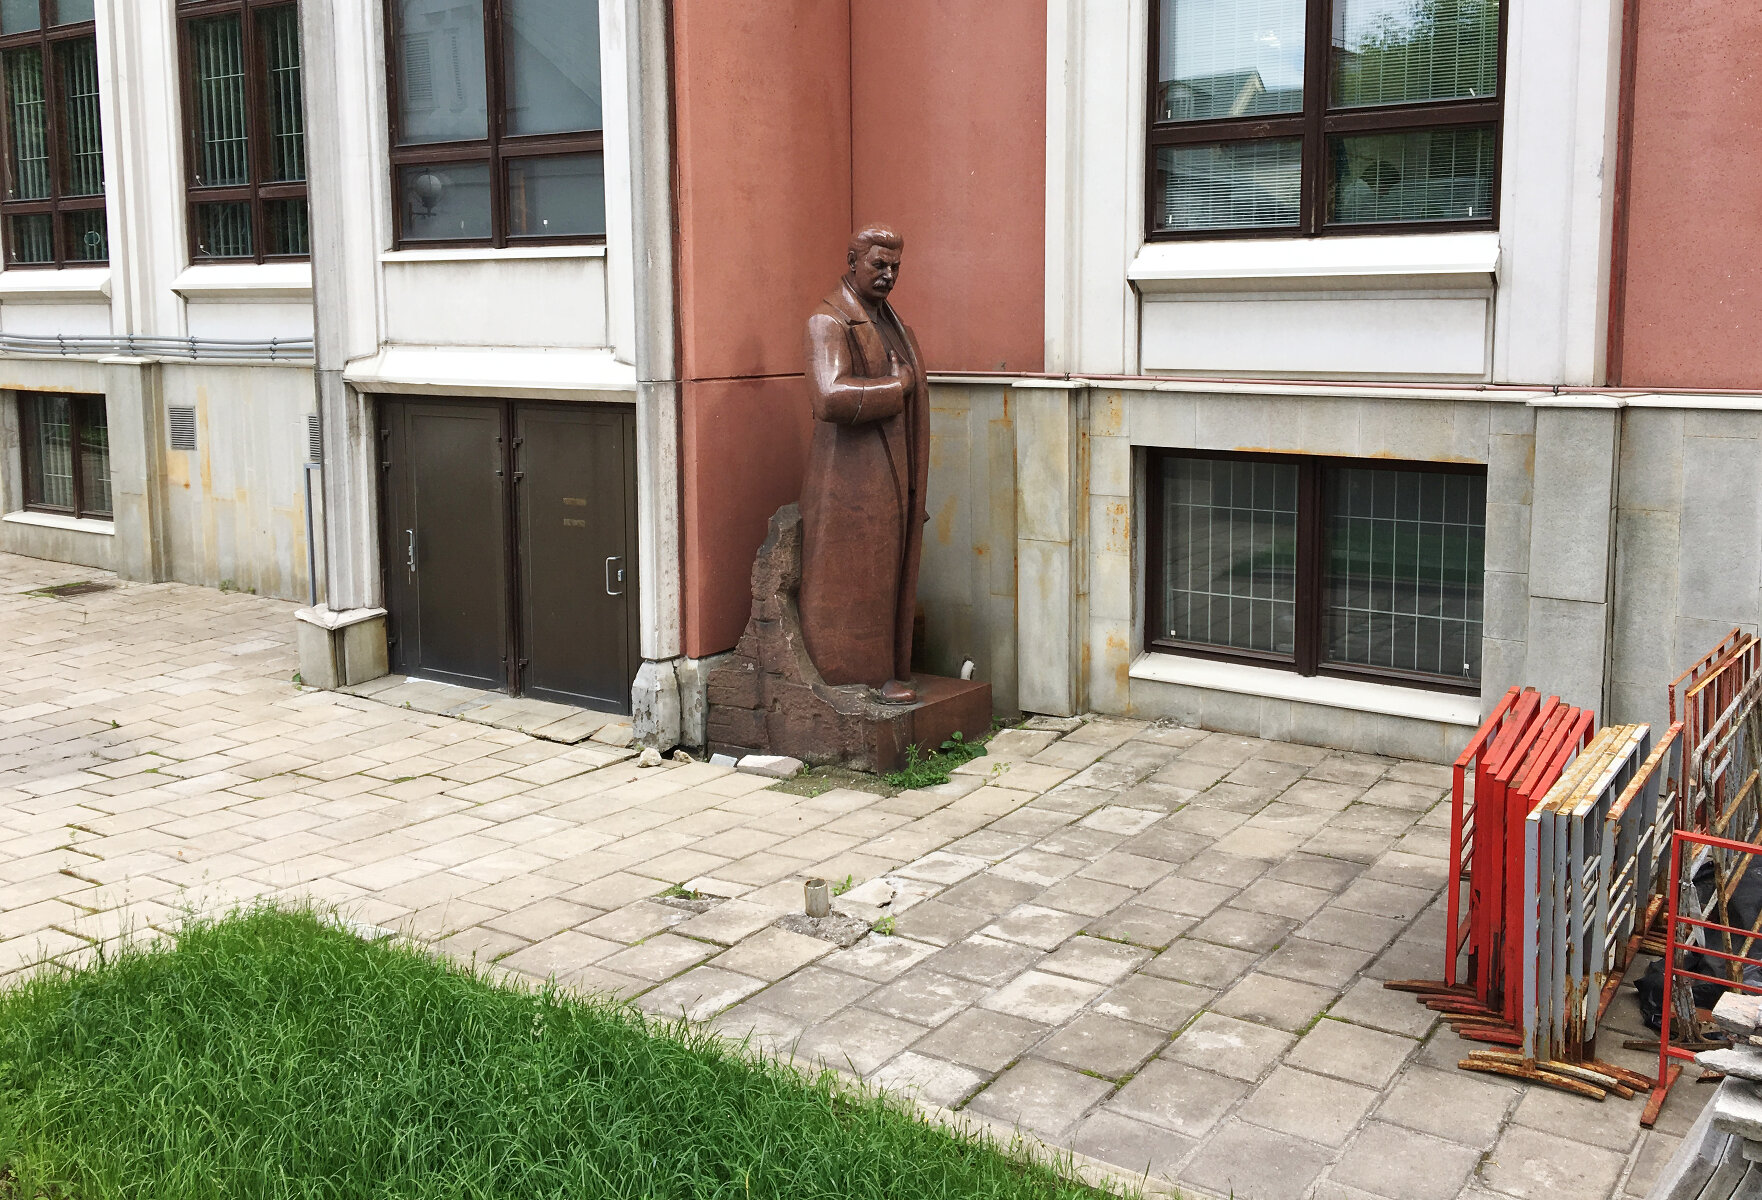 <p><strong>Сталин в&nbsp;Третьяковке</strong></p>

<p>В 1939 году на площади у Третьяковской галереи&nbsp;был установлен памятник Сталину, который затем был демонтирован как и остальные его статуи в Москве. В 1980 году на его месте установили памятник Павлу Третьякову, а старую скульптуру перенесли&nbsp;во внутренний двор, где она стоит до сих пор.&nbsp;</p>